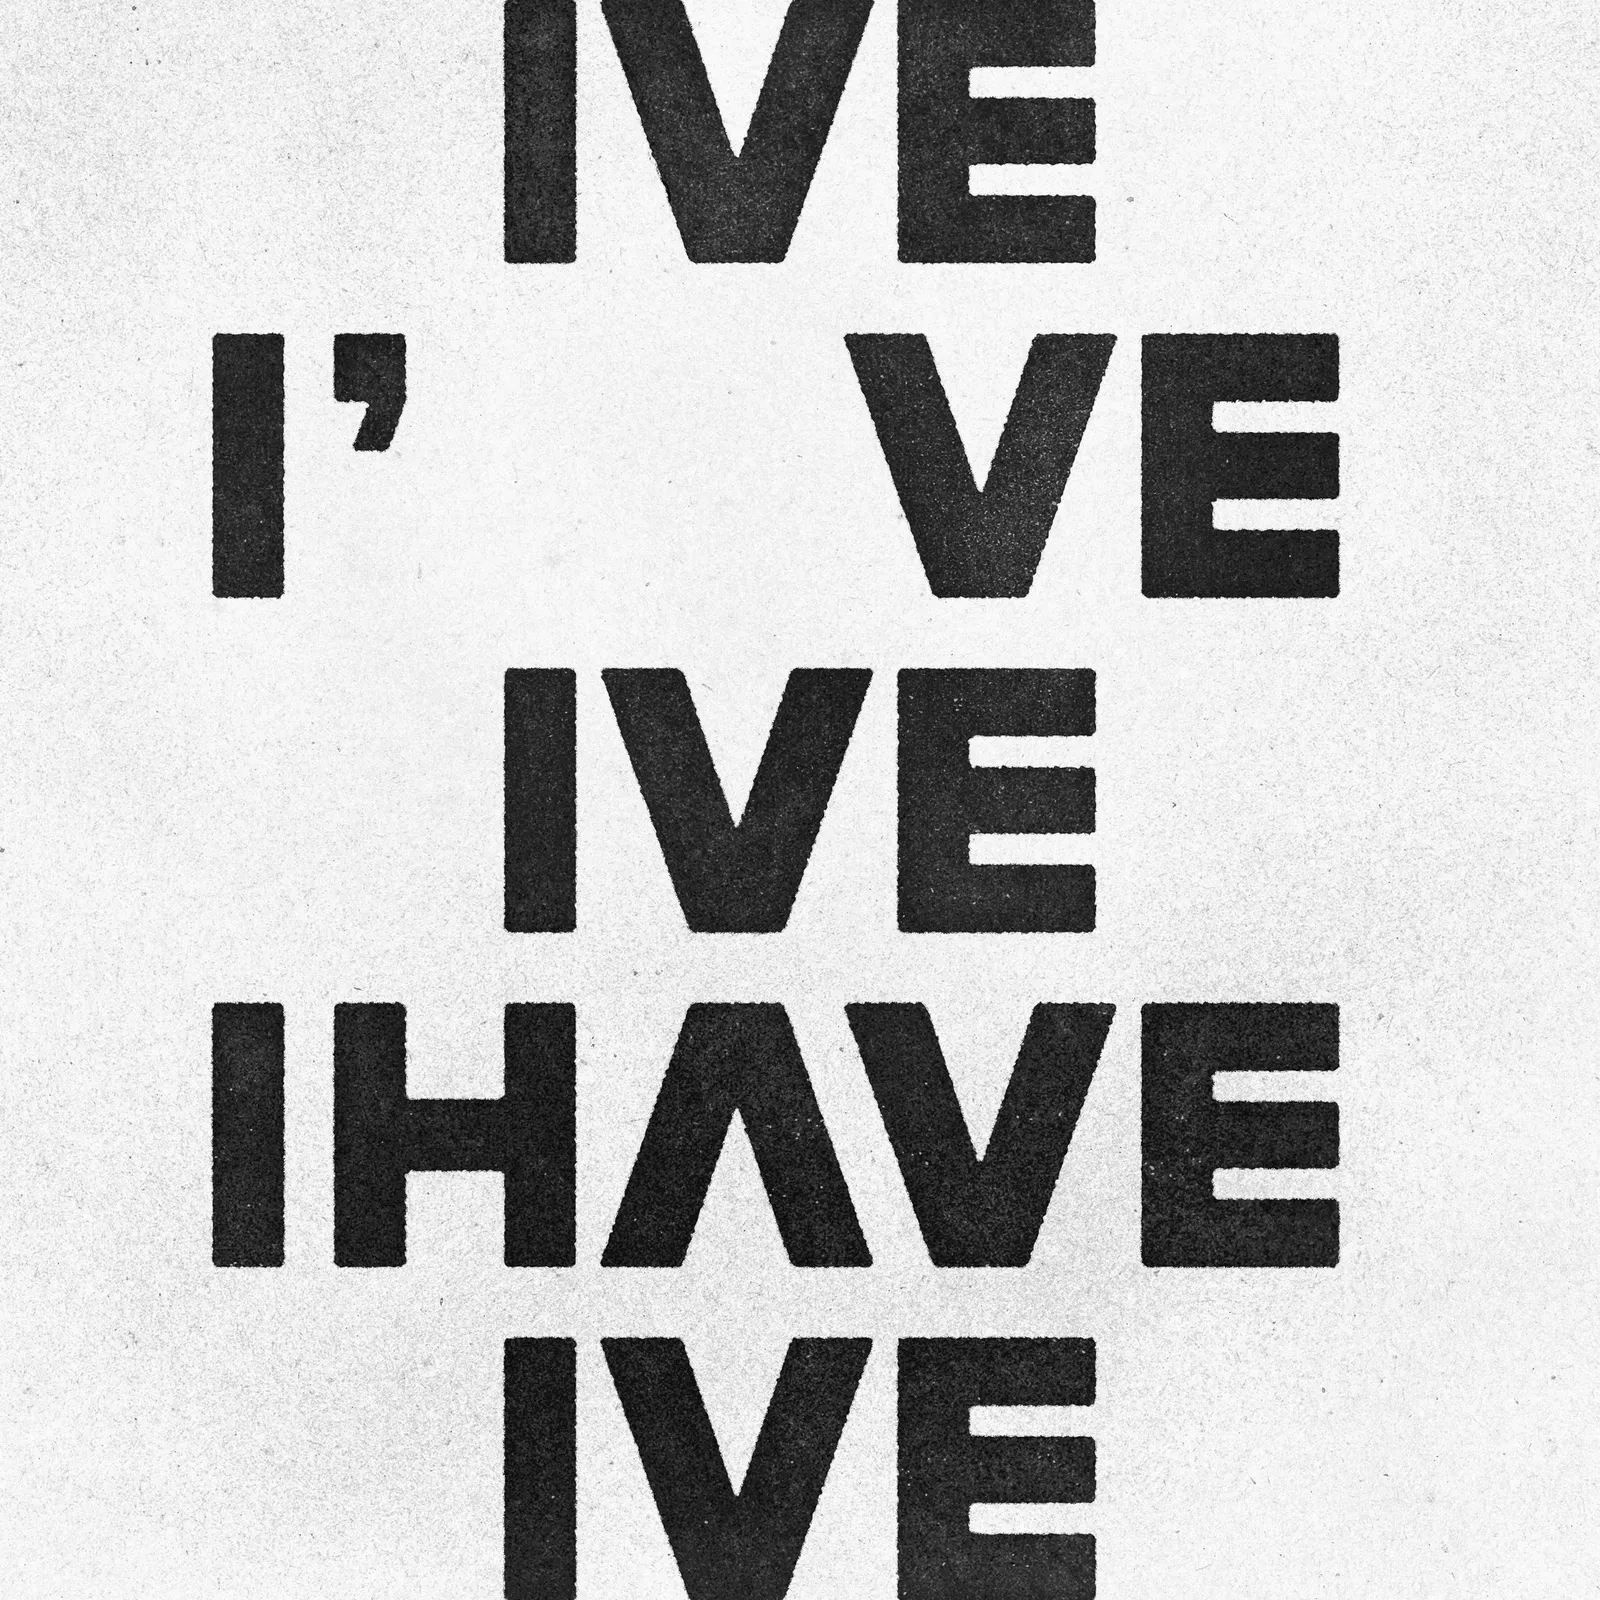 Lirik Lagu IVE - "I AM" dan Sederet Fakta Tentang Album 'I've IVE'